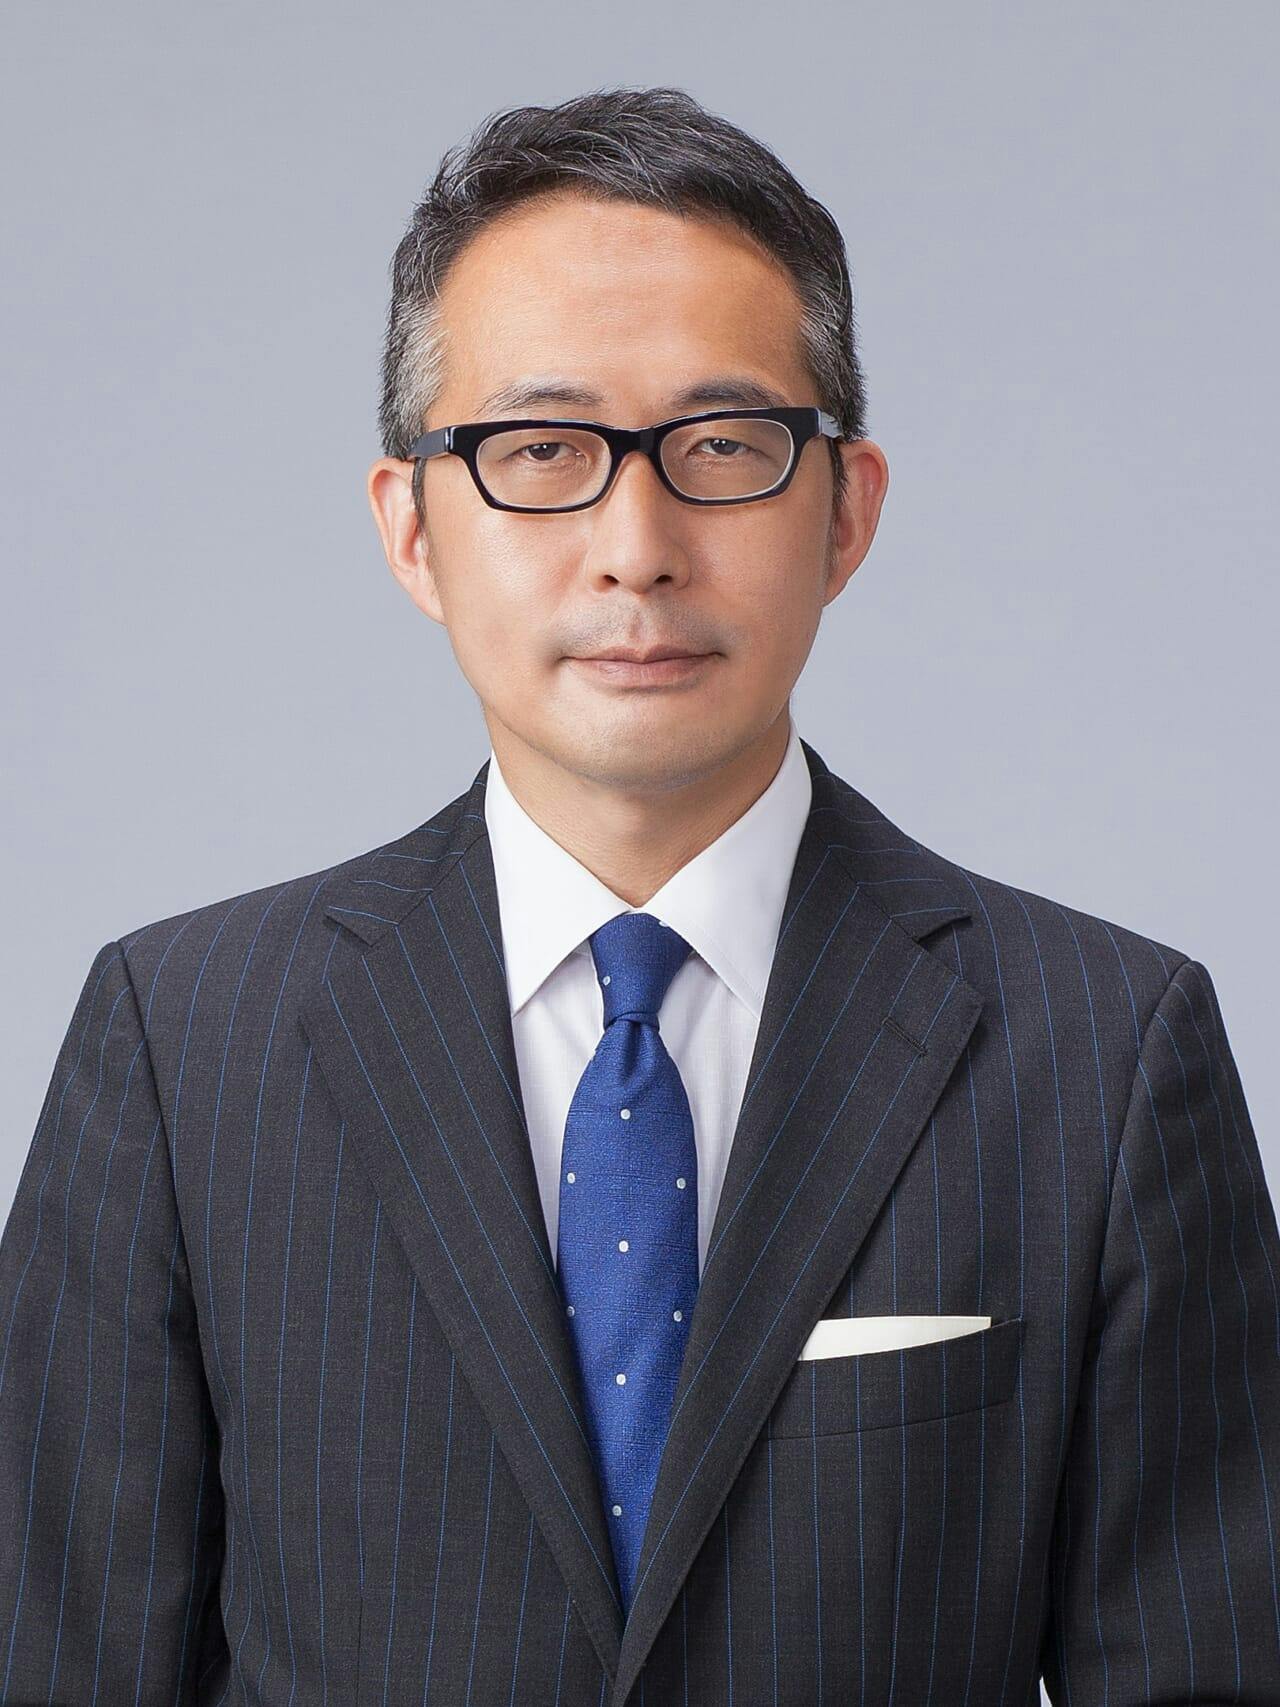 新たな代表取締役に就任した古屋毅彦氏。